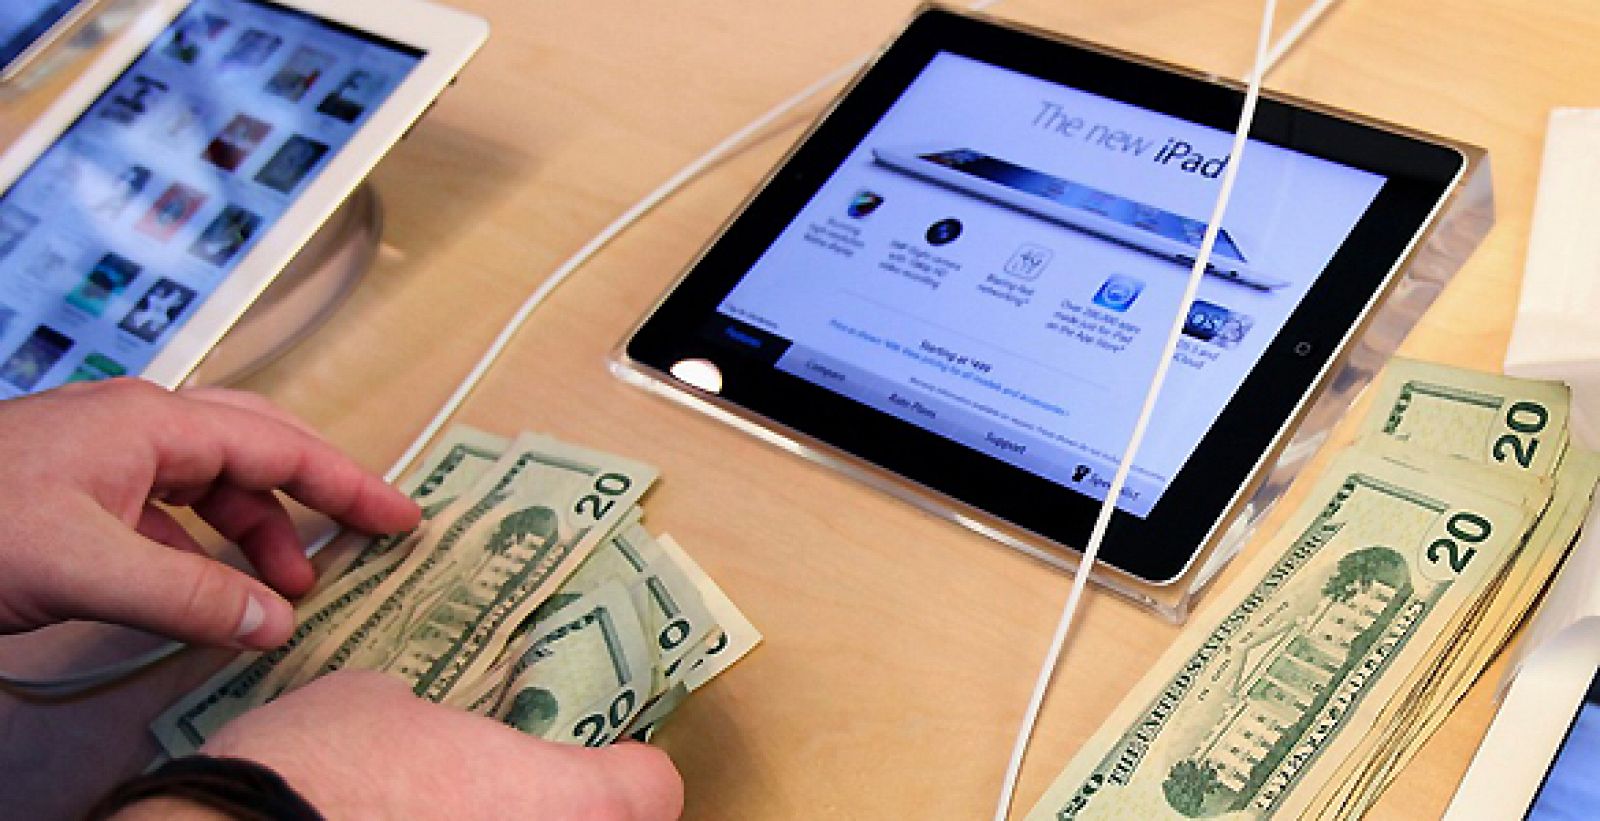 Un cliente cuenta su dinero antes de adquirir el nuevo iPad de Apple